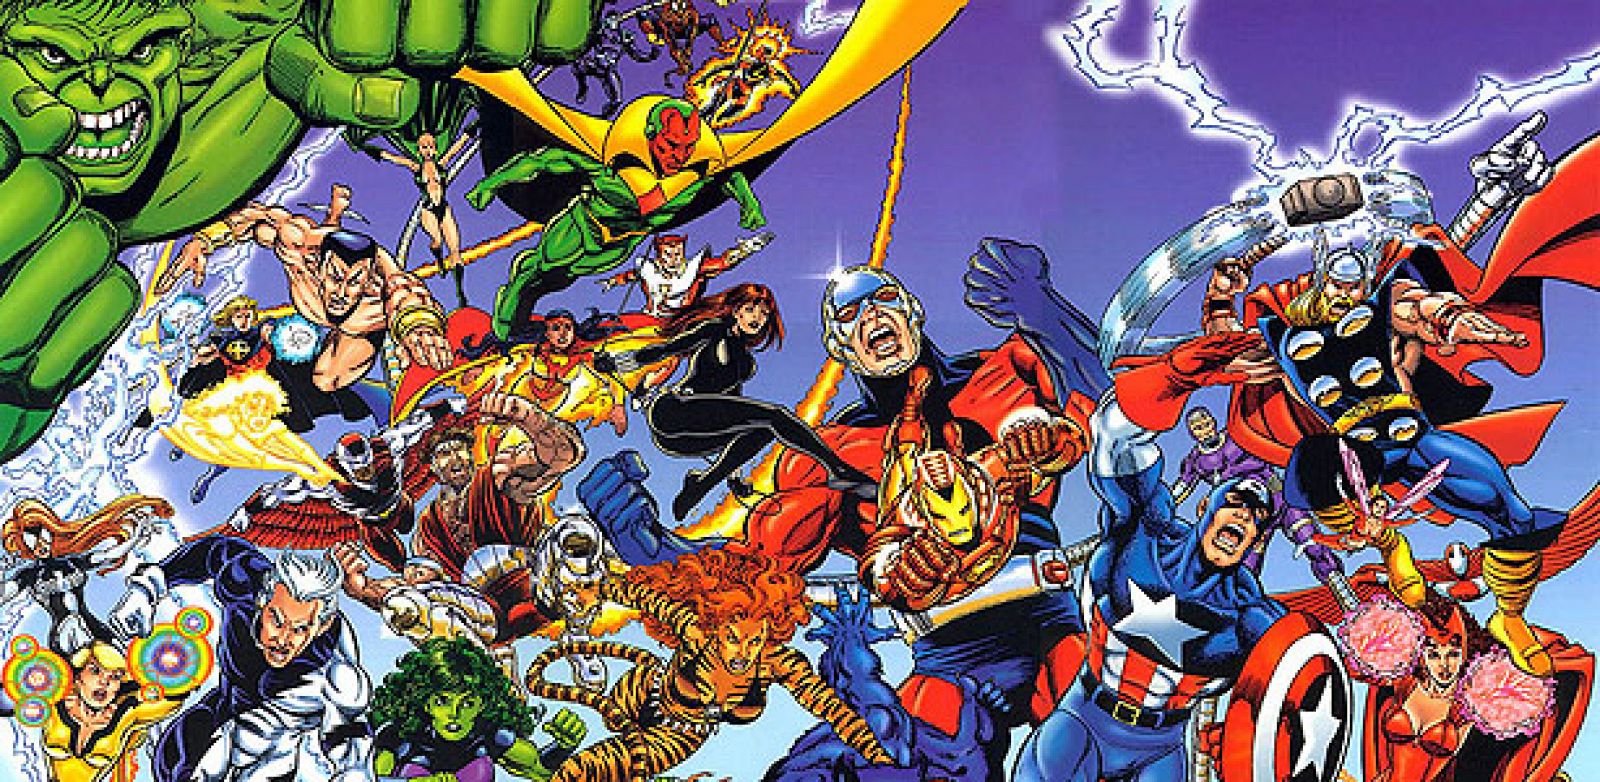 Los mejores superhéroes de Marvel: La lista definitiva - Blog La